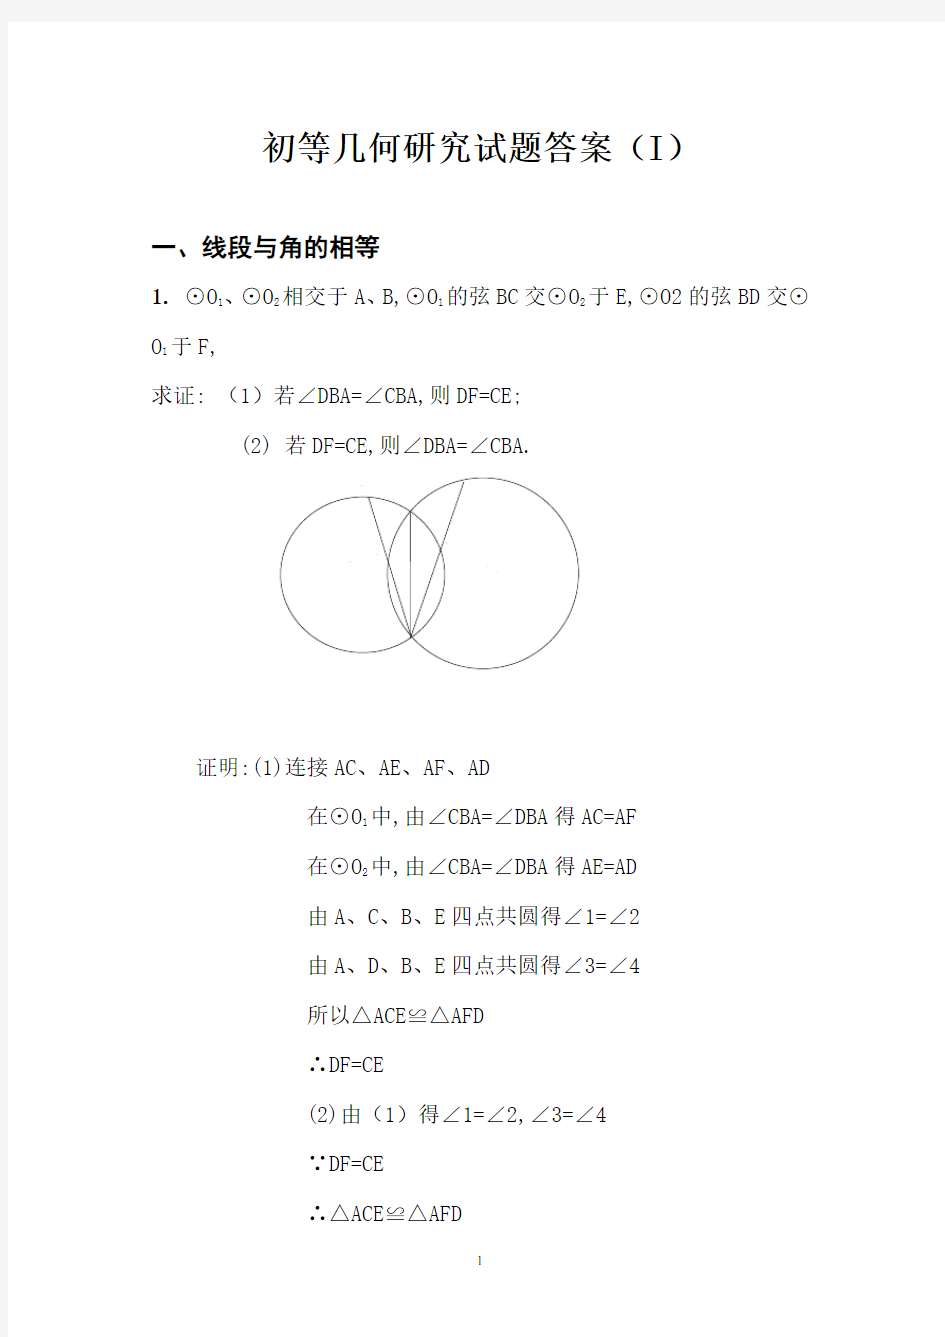 初等几何研究试题答案(1)(李长明版)汇总